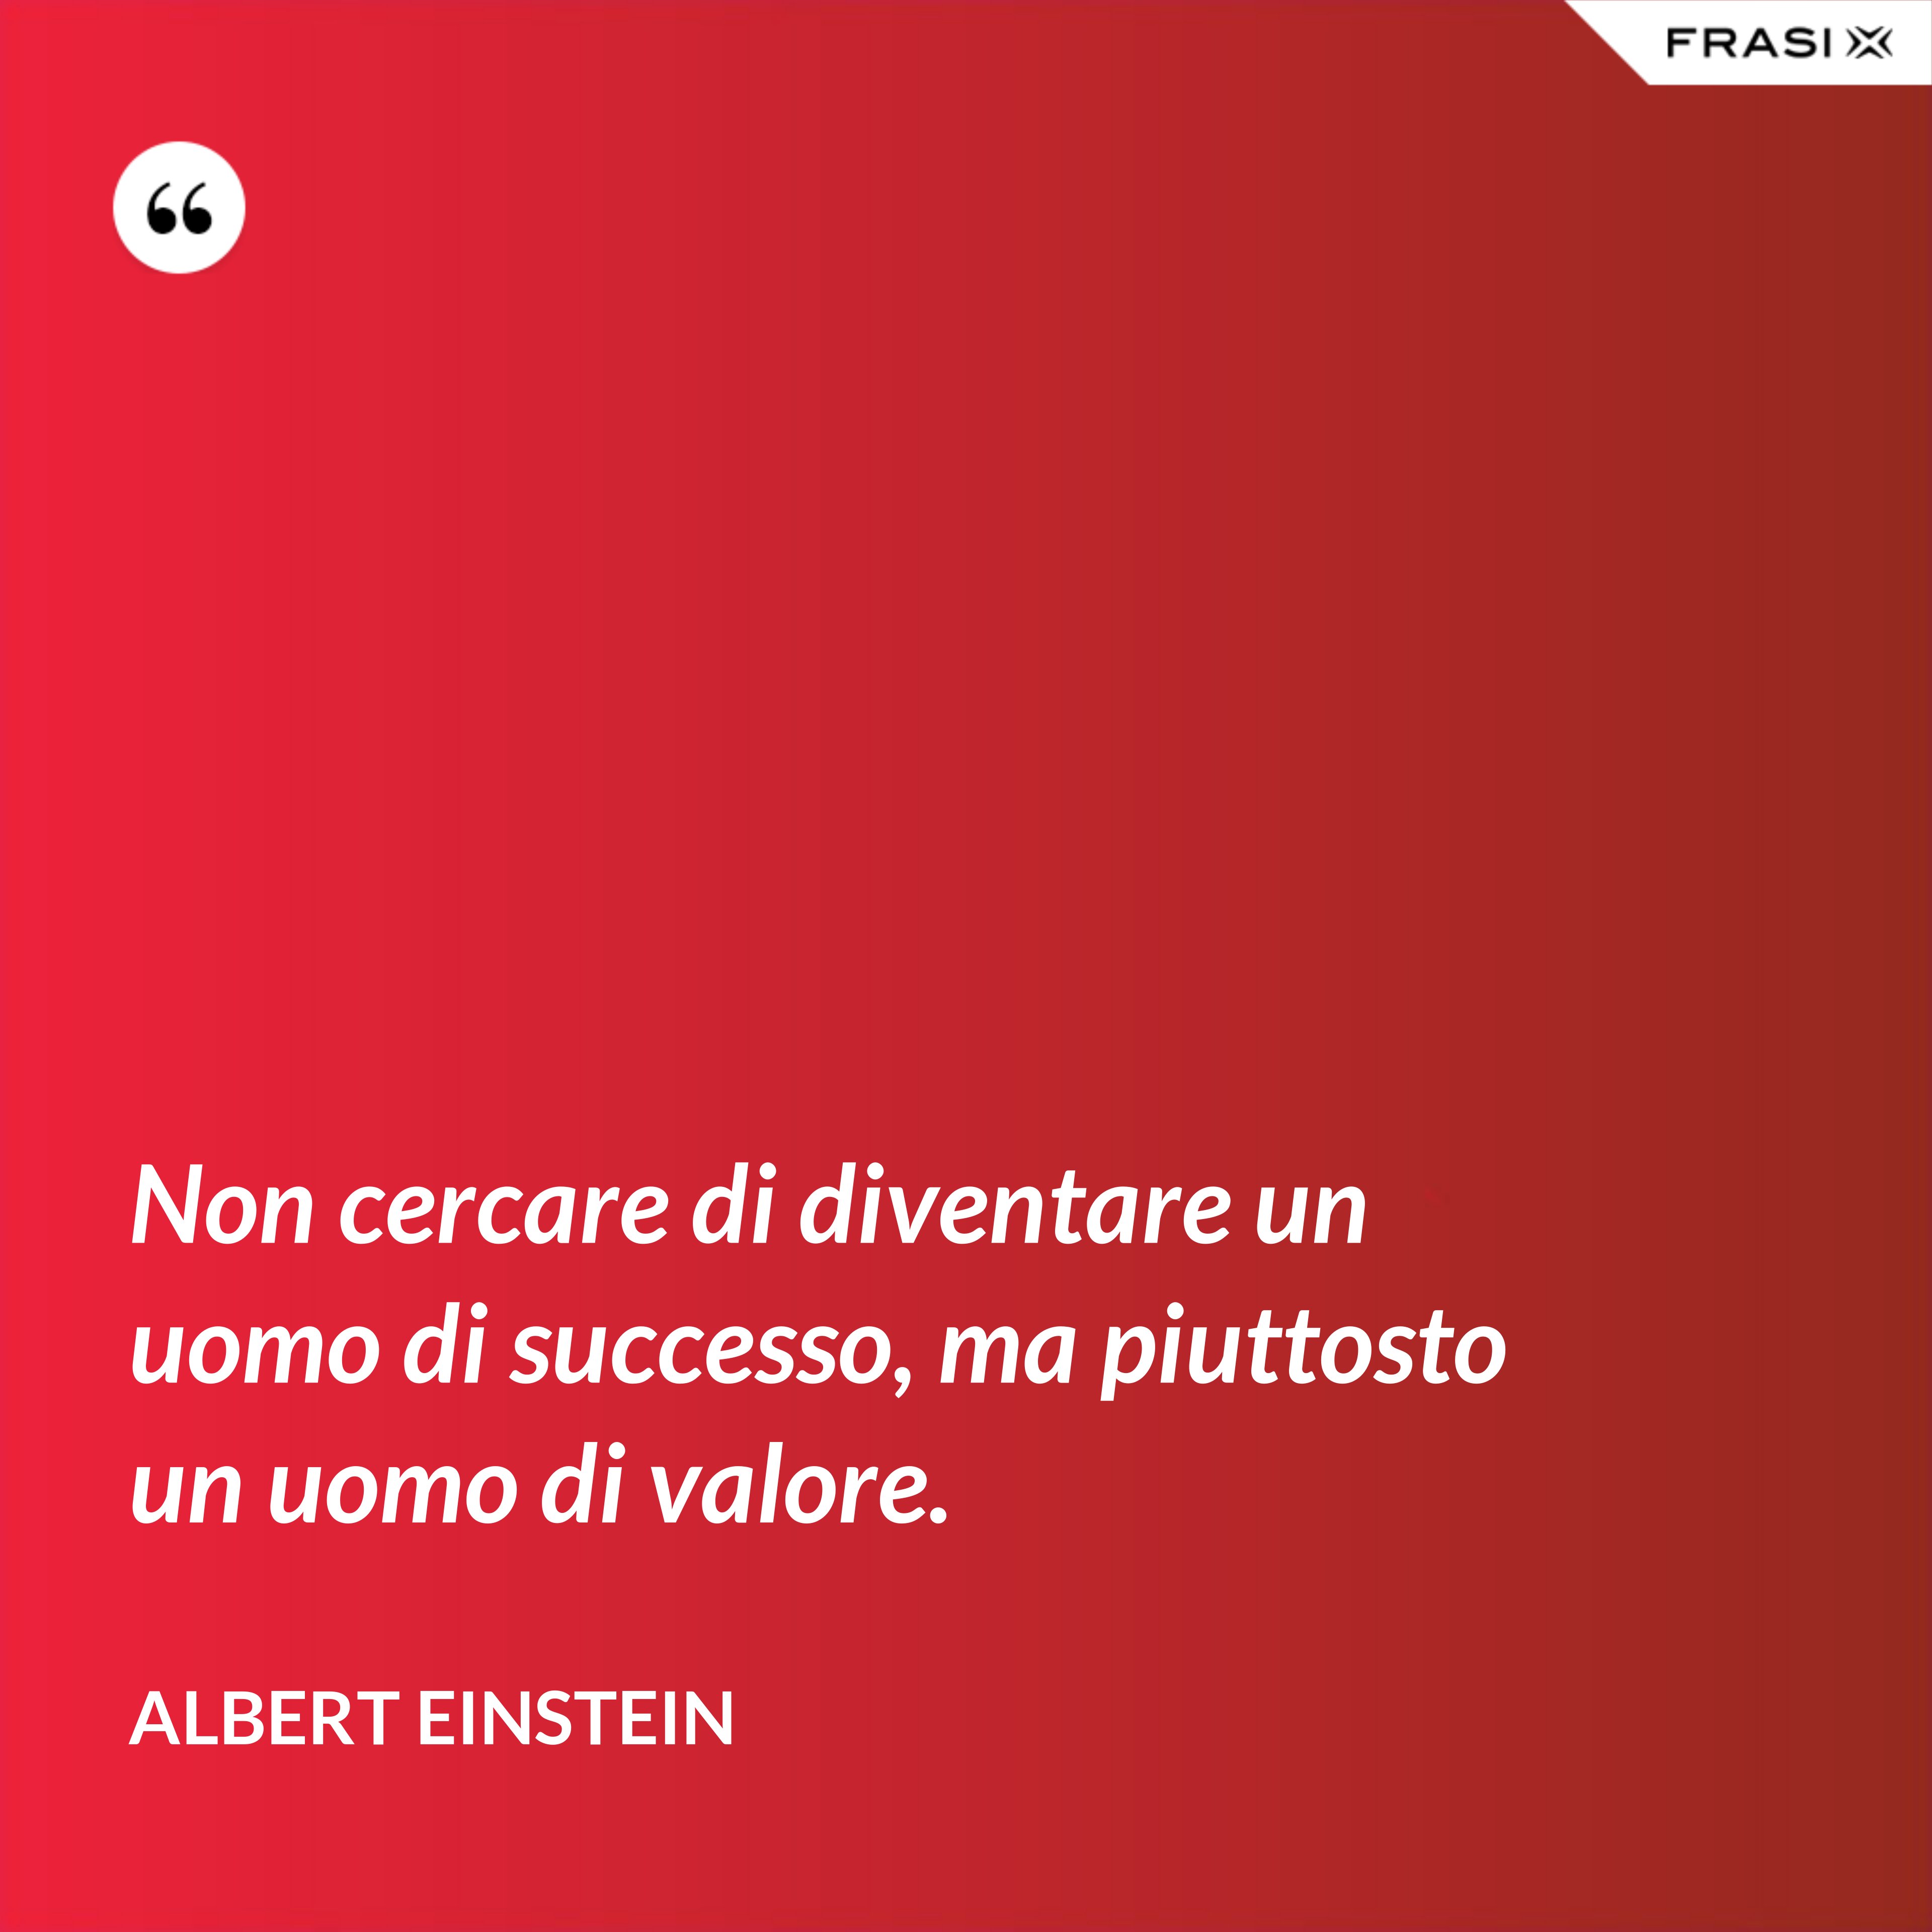 Non cercare di diventare un uomo di successo, ma piuttosto un uomo di valore. - Albert Einstein